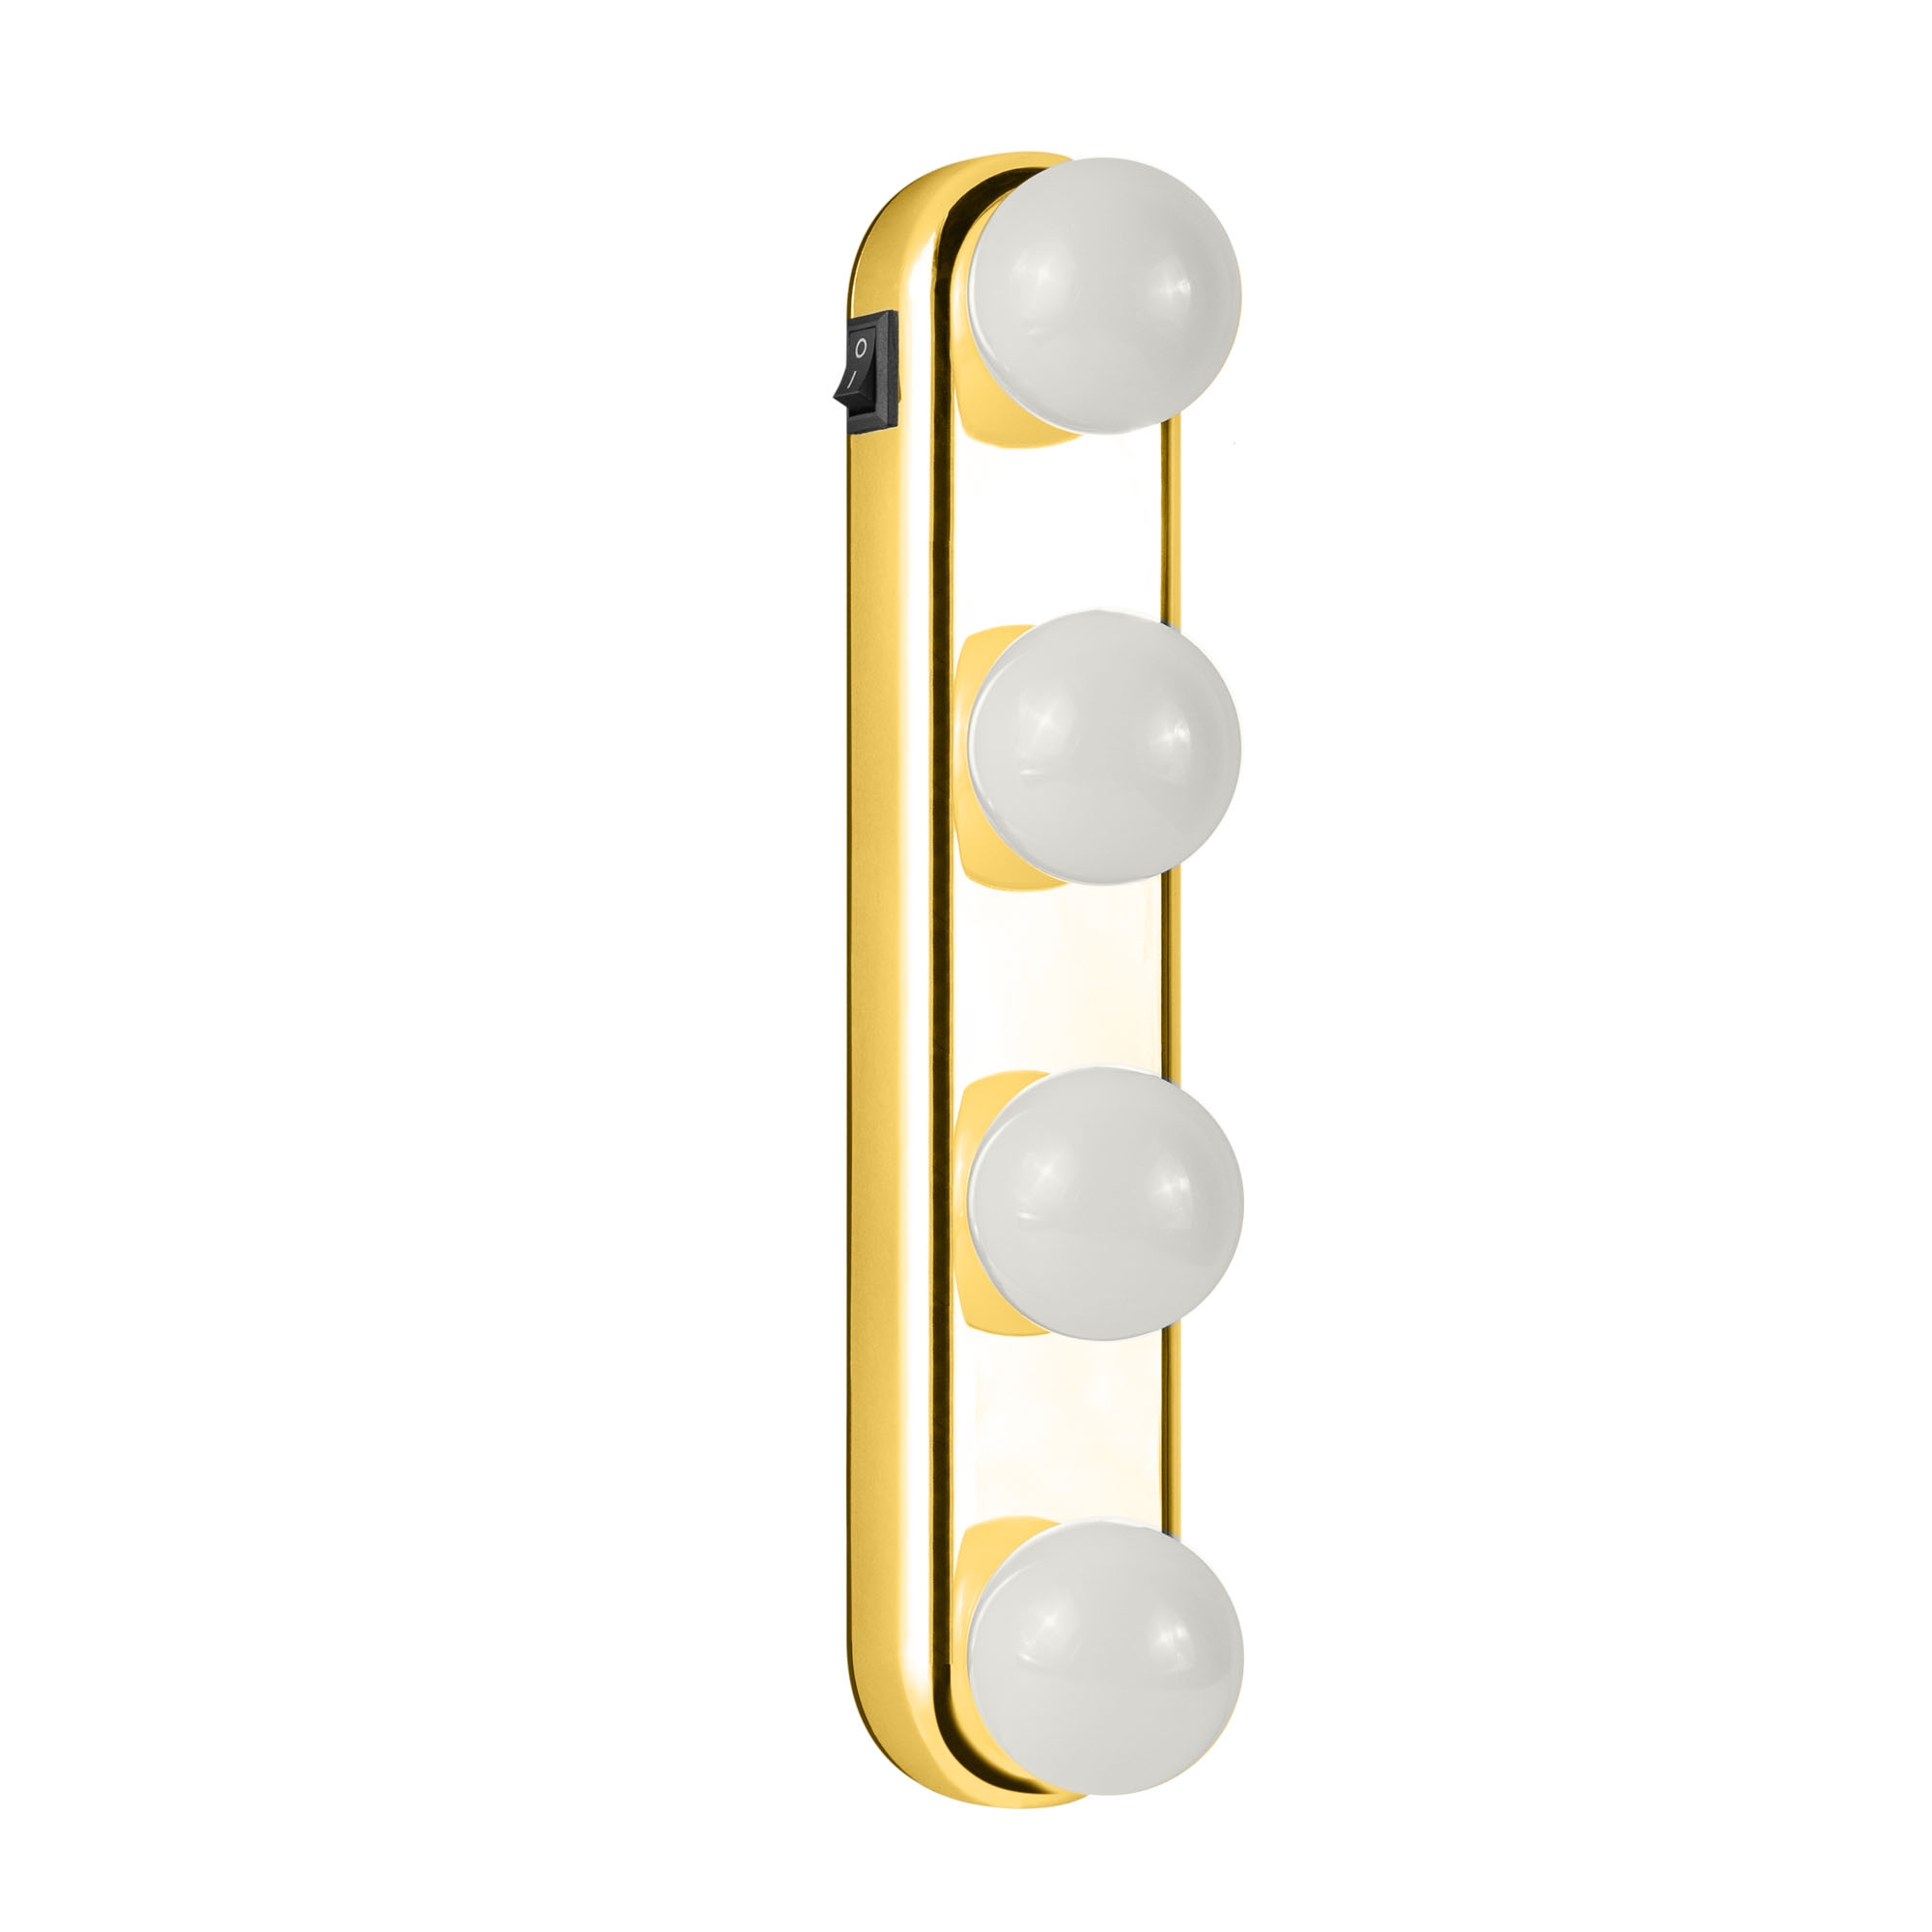 Беспроводной светильник на присосках Rombica LED Beauty, золотой, золото, пластик